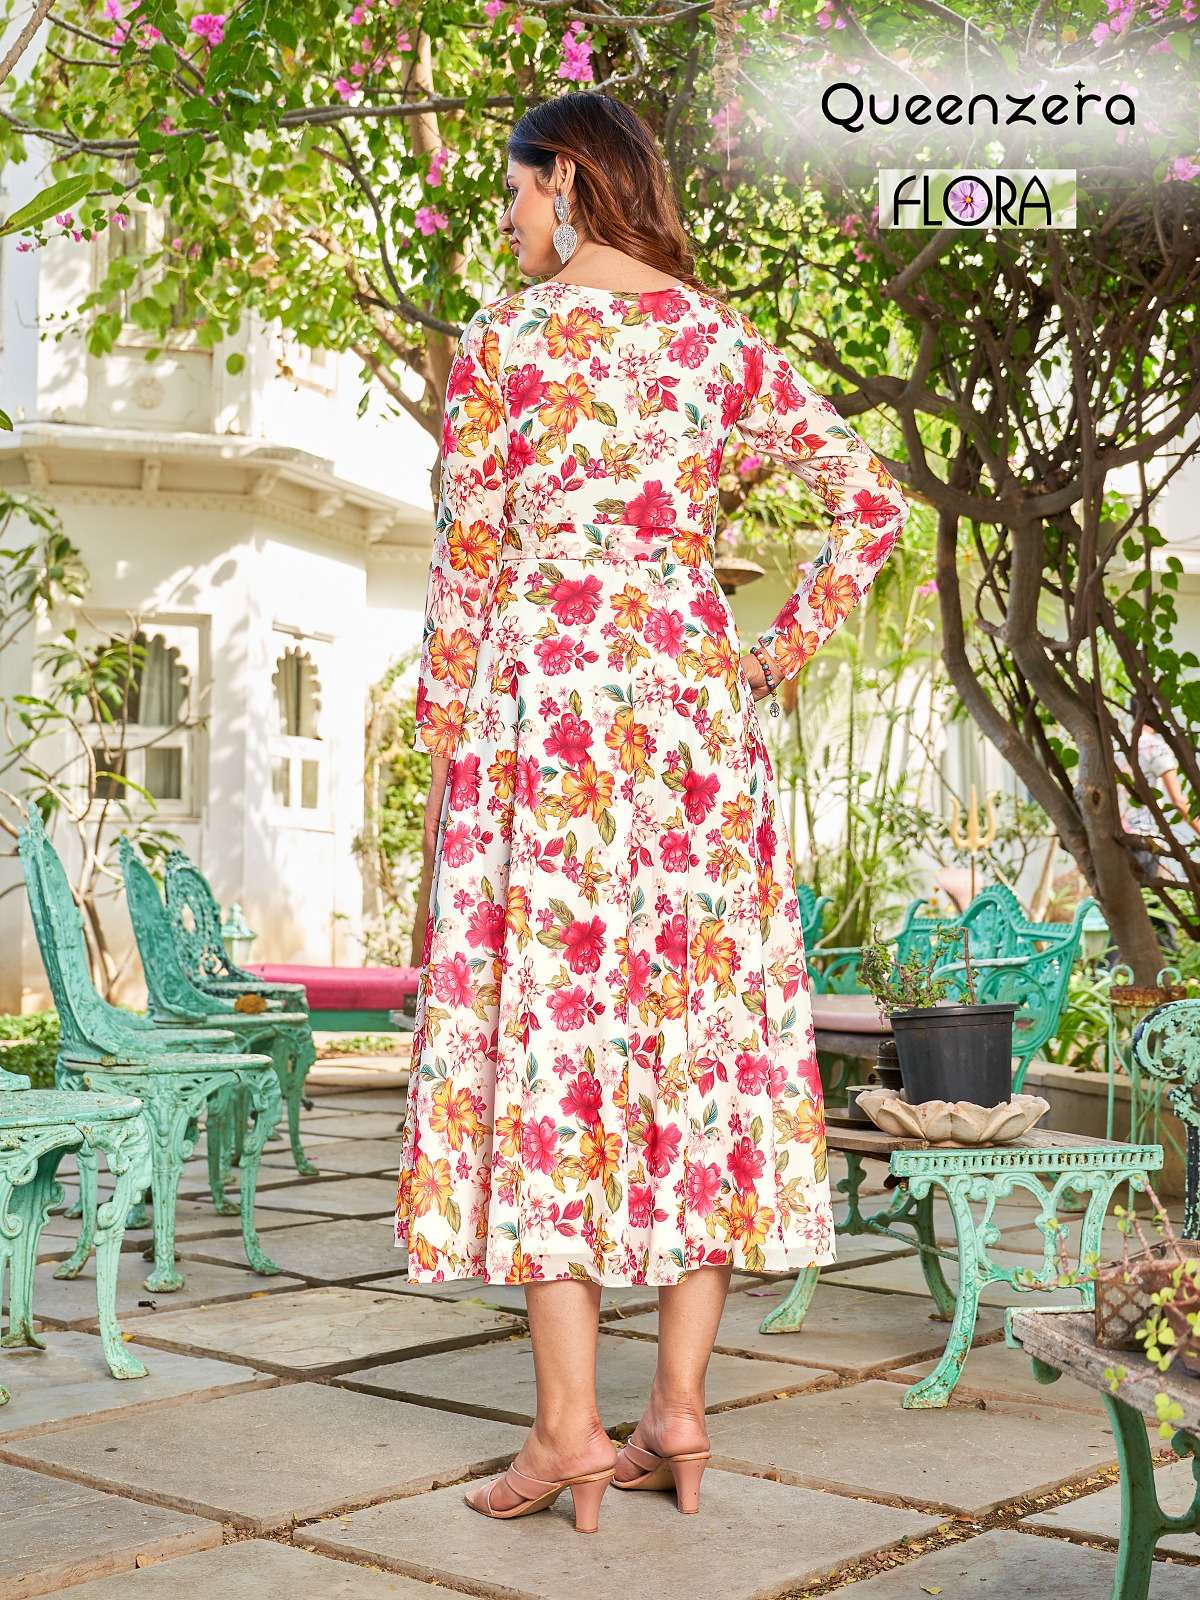 queenzera flora 101-106 series fancy look designer long kurtis catalogue online supplier surat